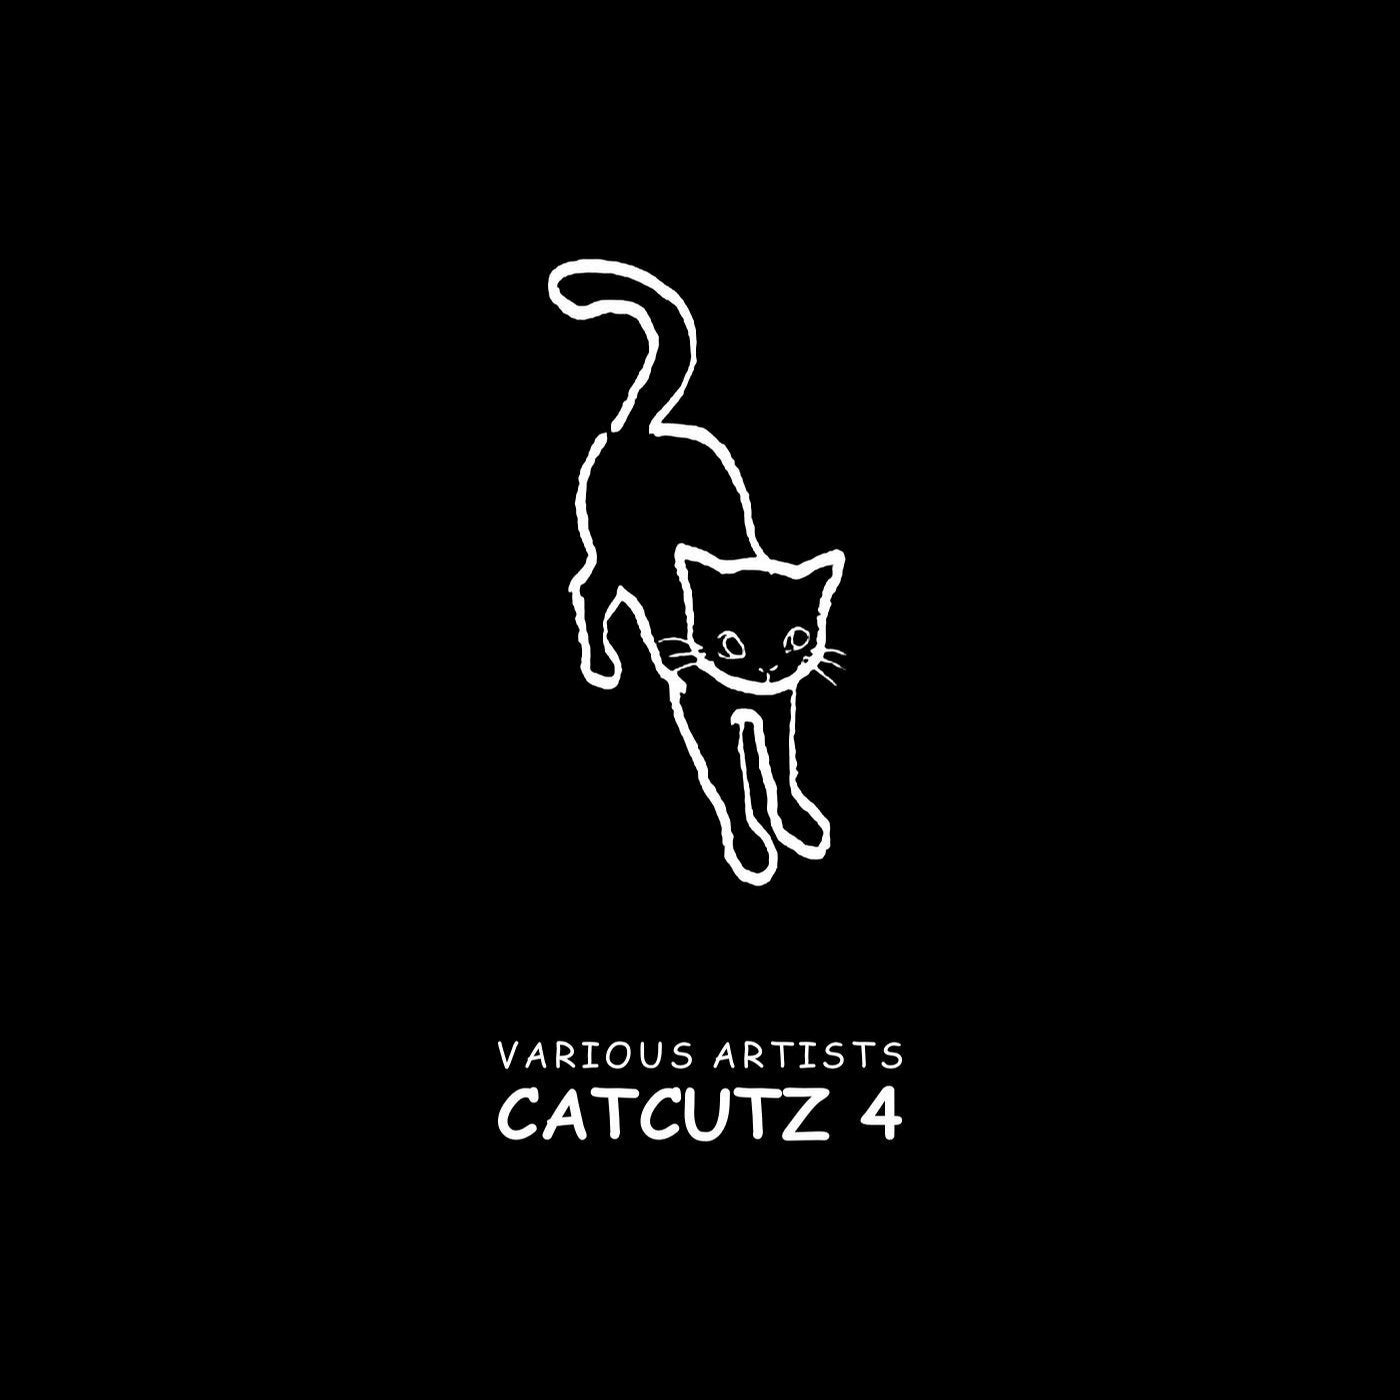 Catcutz 4